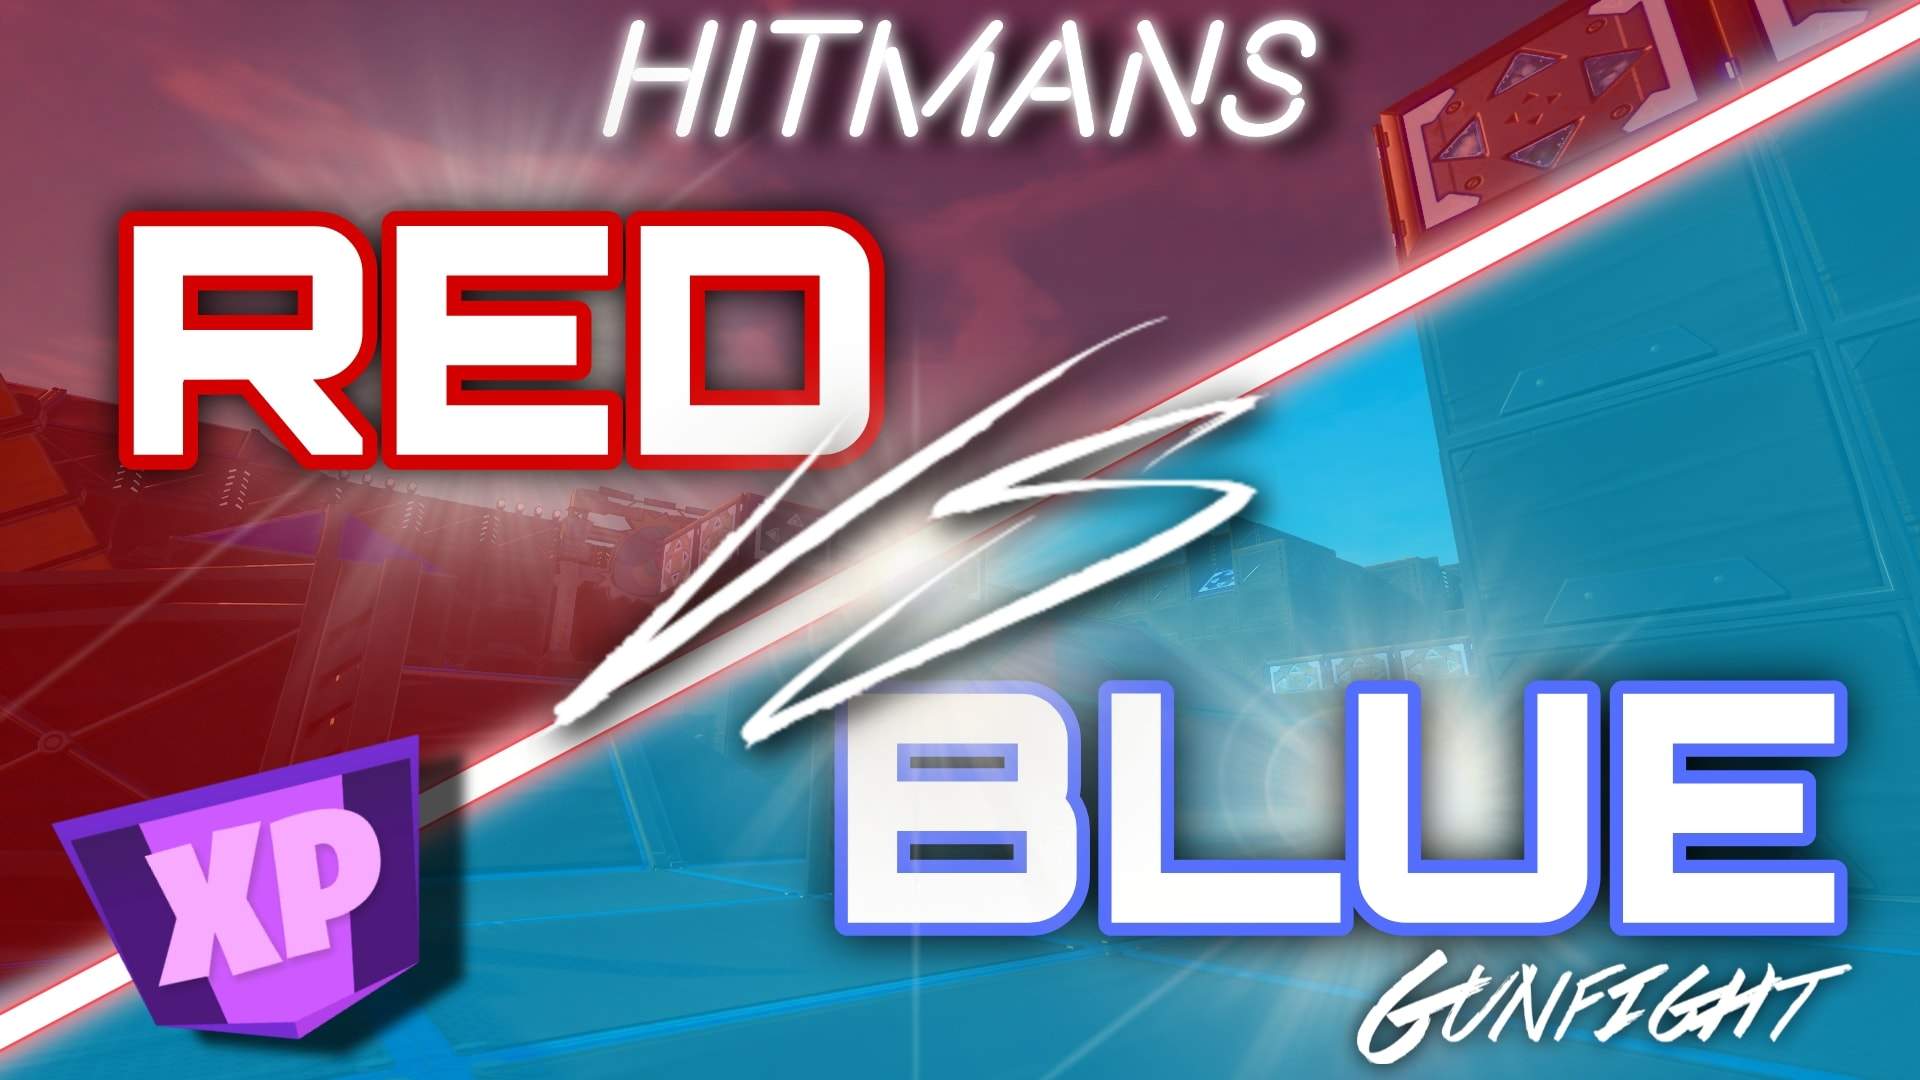 HITMANS RED Vs BLUE